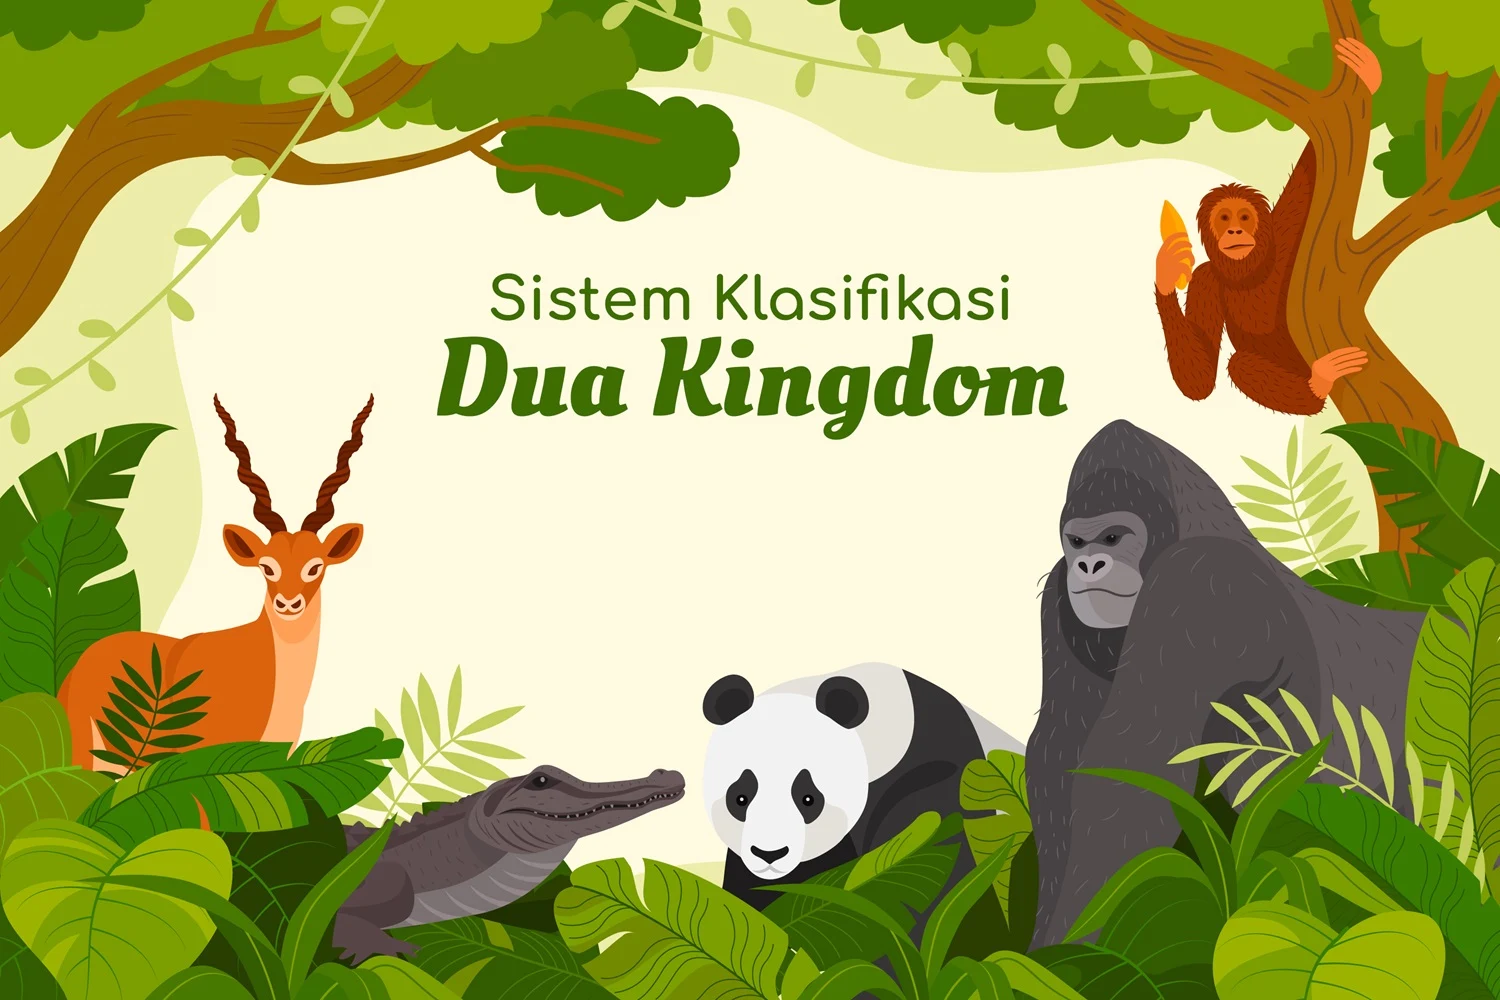 Sistem Klasifikasi Dua Kingdom